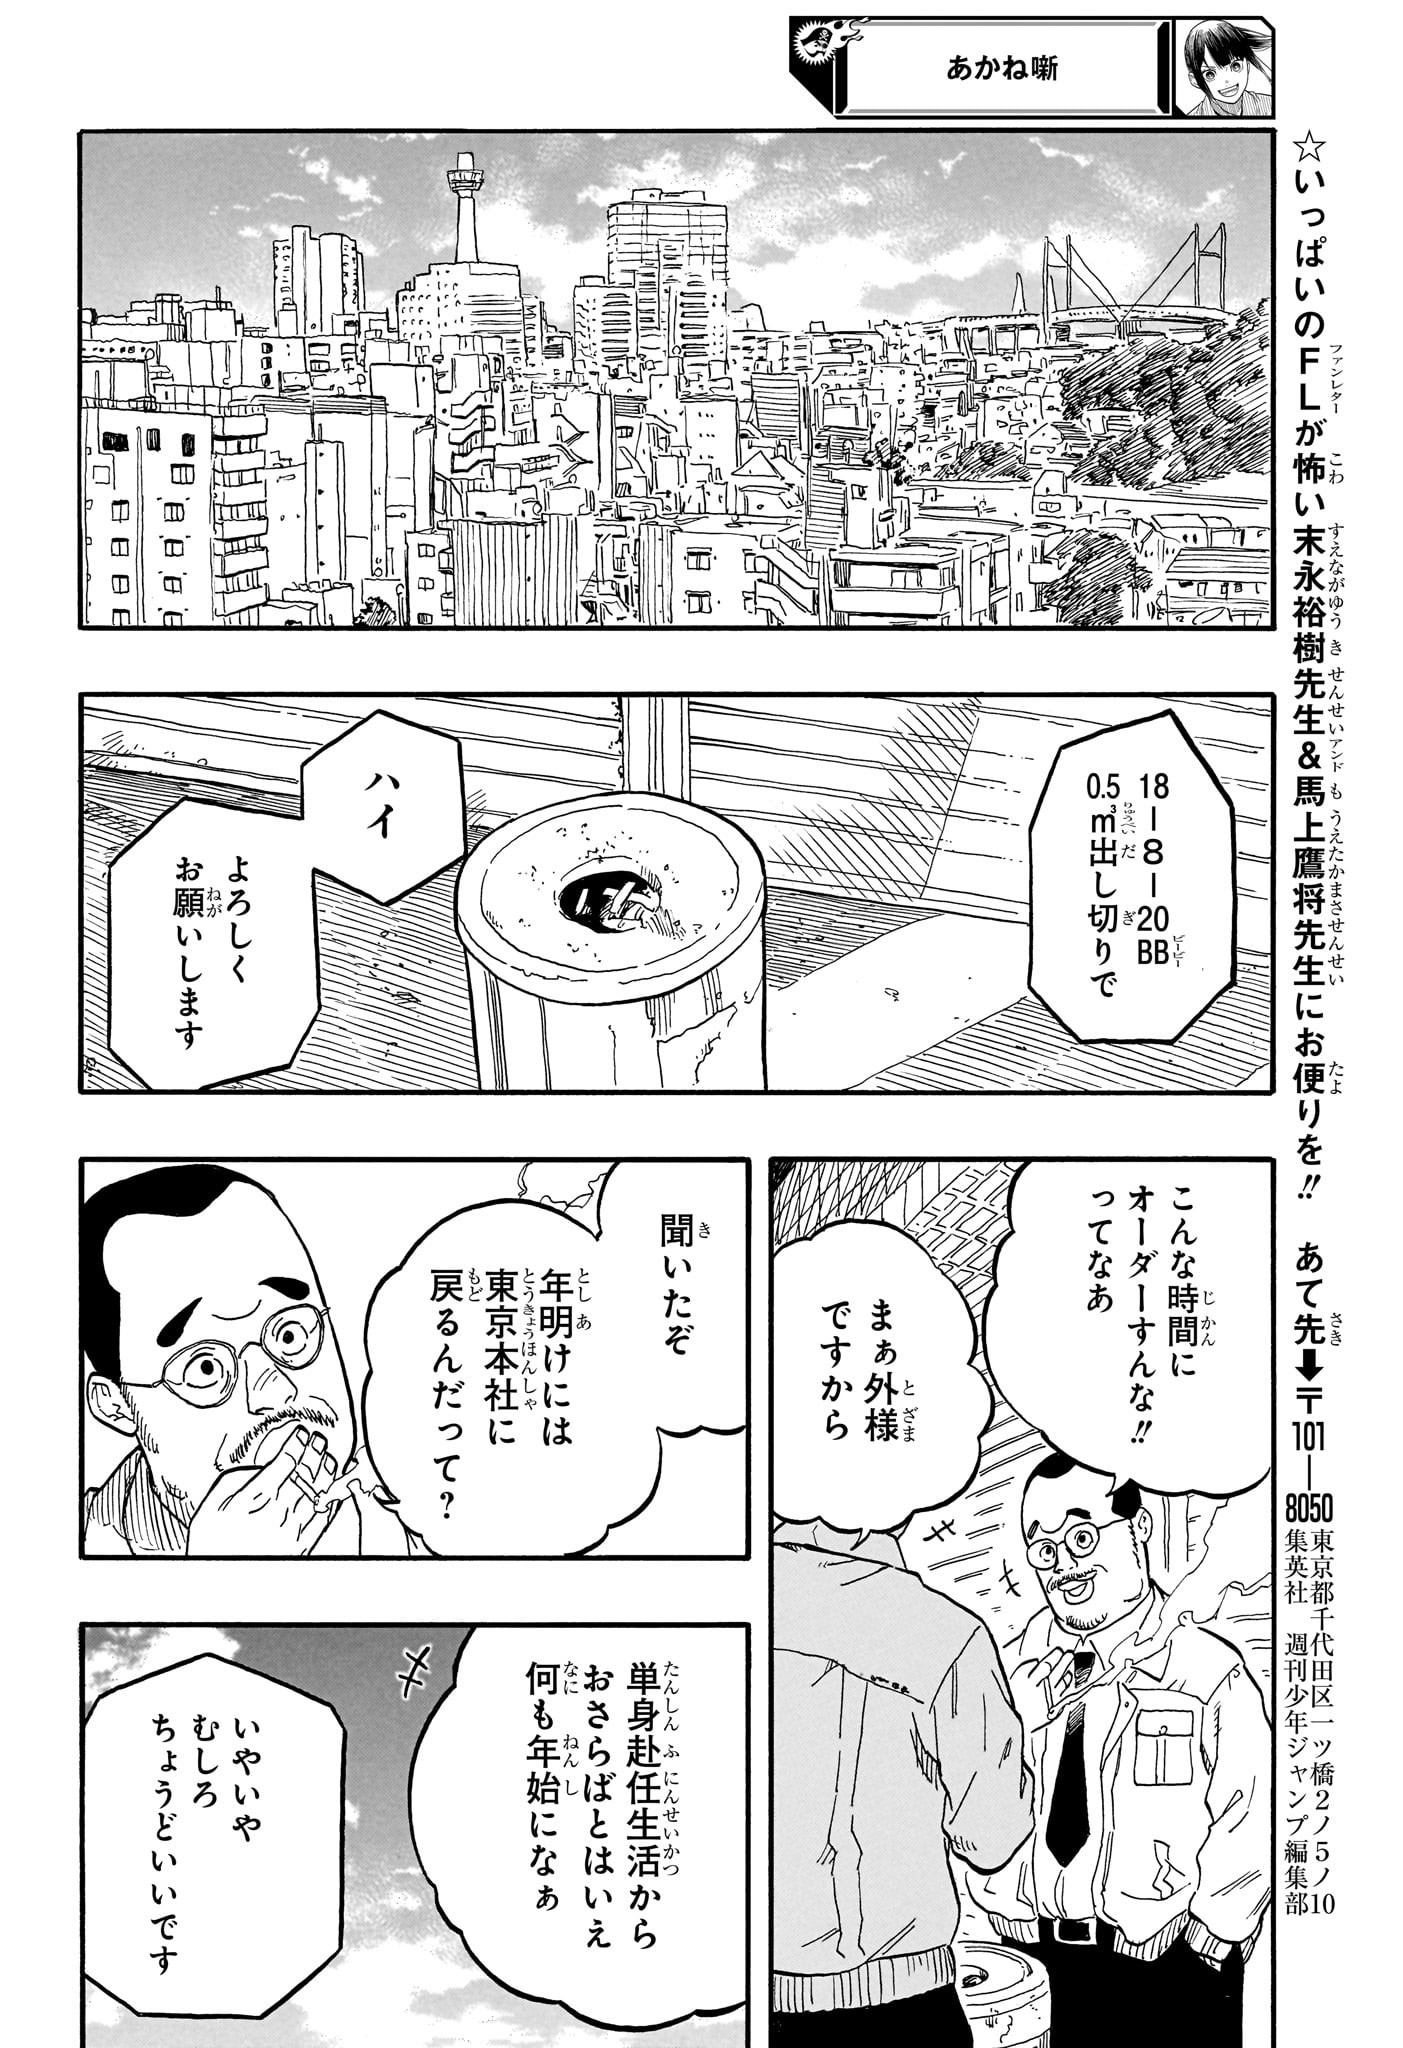 Akane-Banashi - Chapter 89 - Page 20